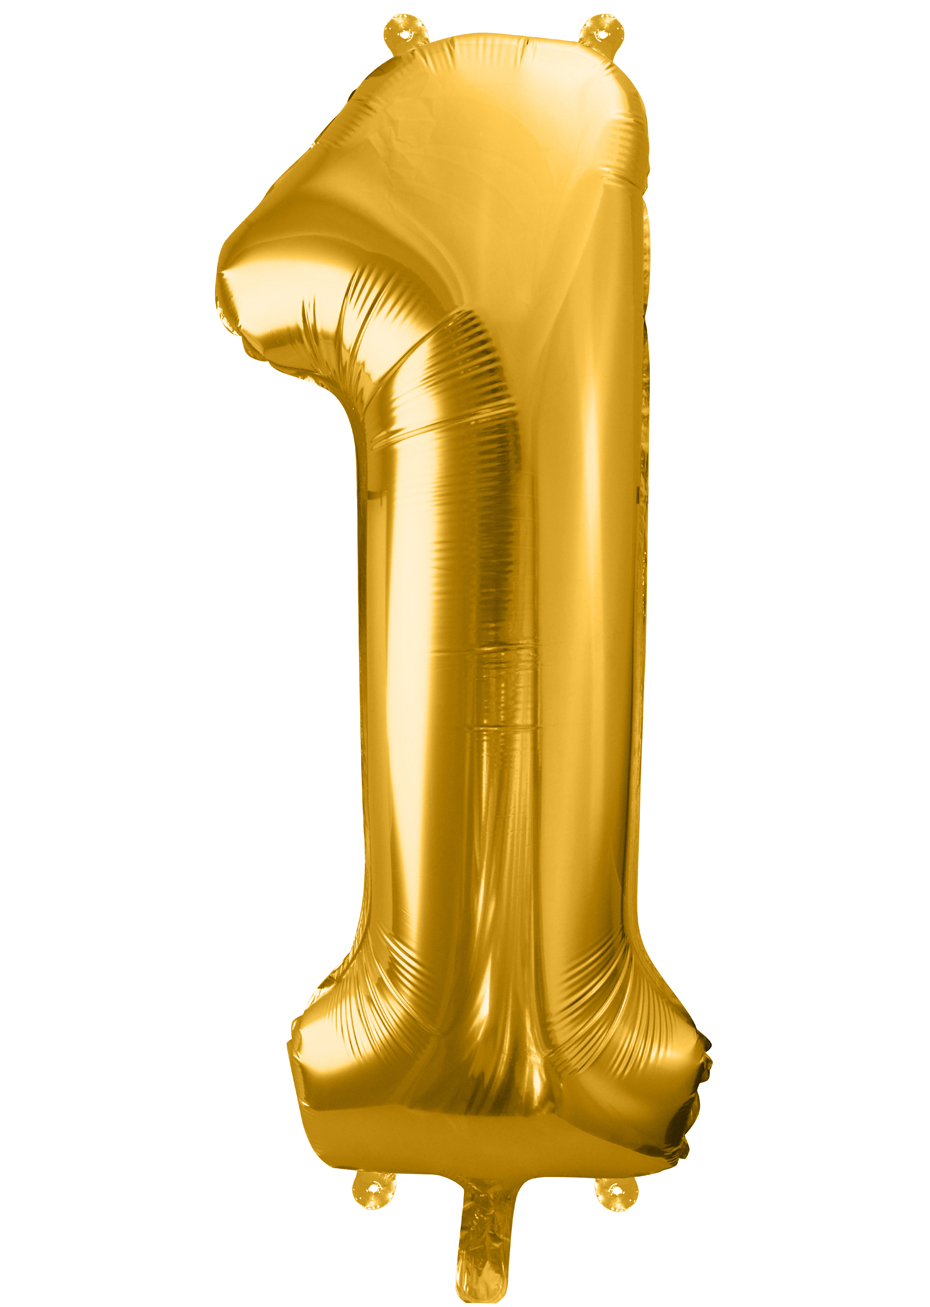 Ballon Aluminium Chiffre Argenté 86 cm - Couleur de Nuit